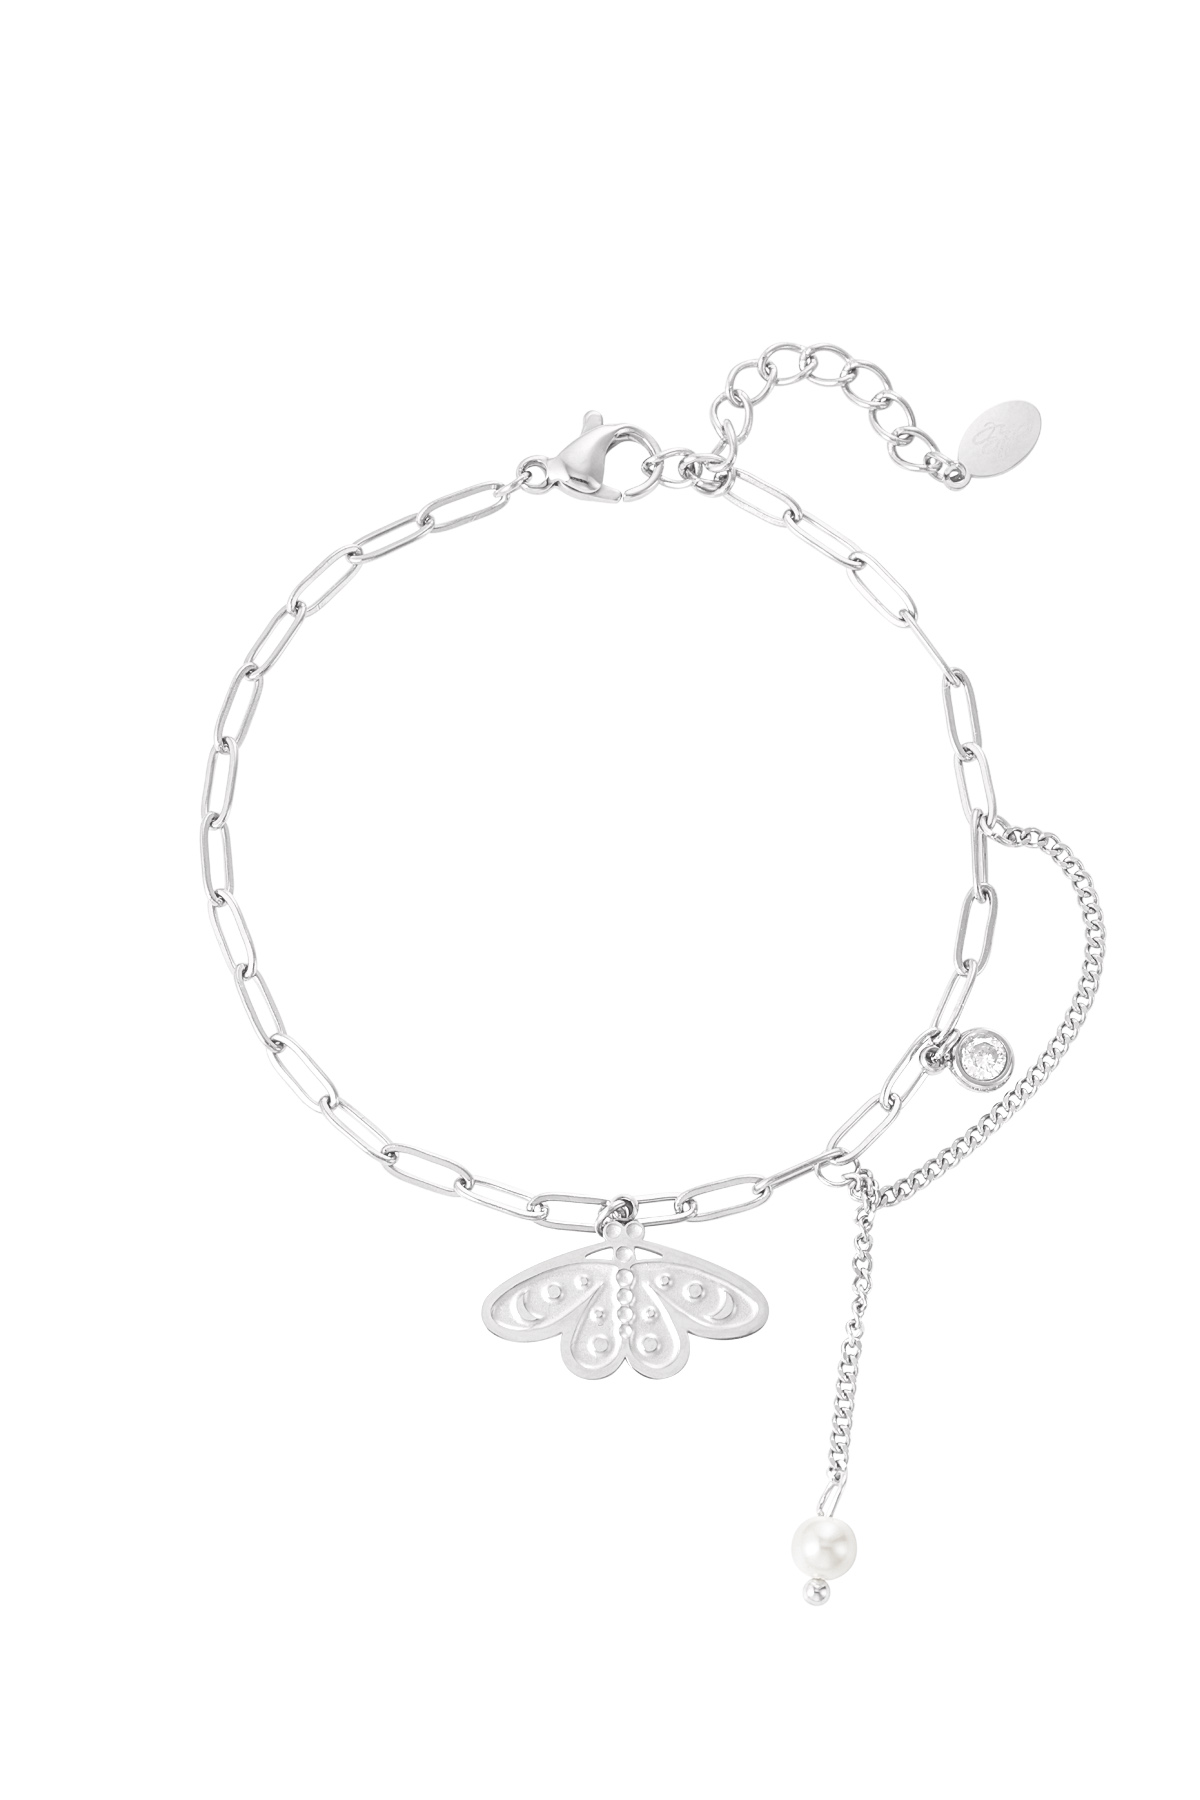 Bracelet winged angel - silver